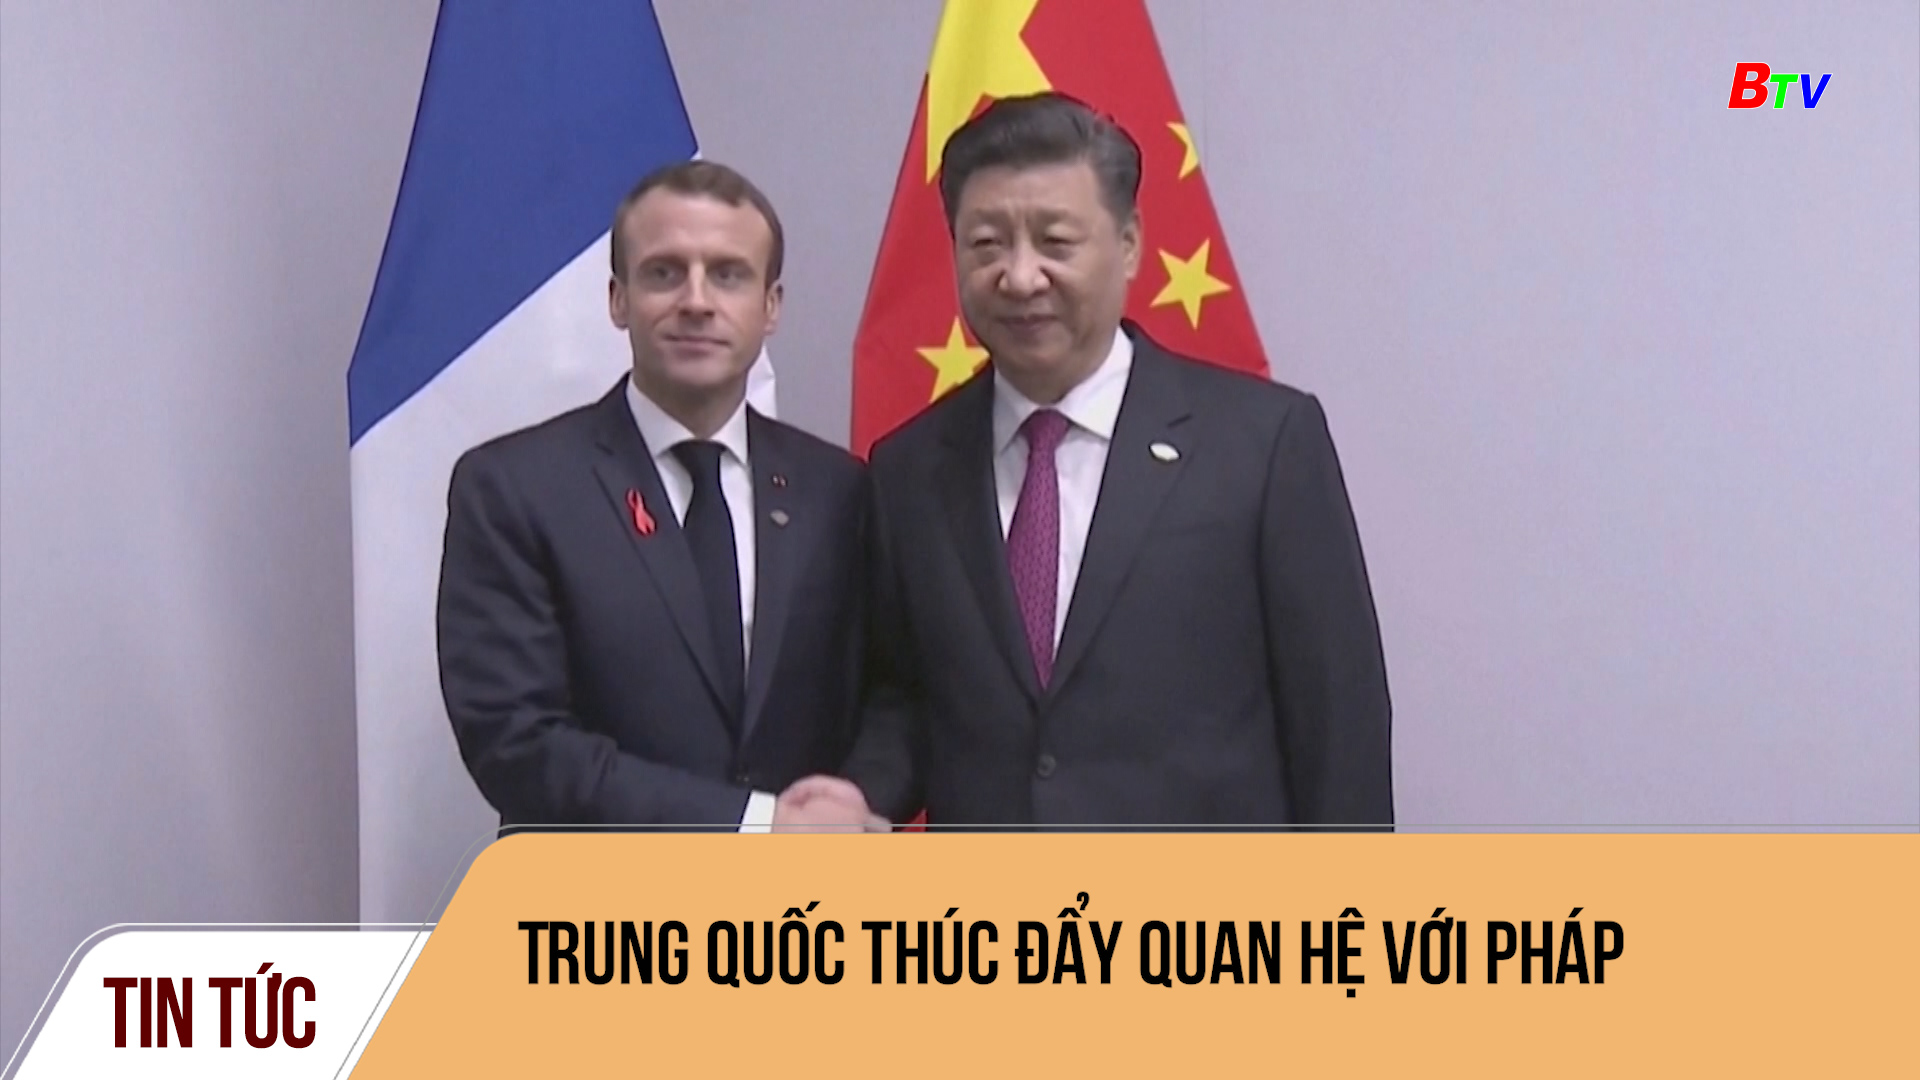 Trung Quốc thúc đẩy quan hệ với Pháp